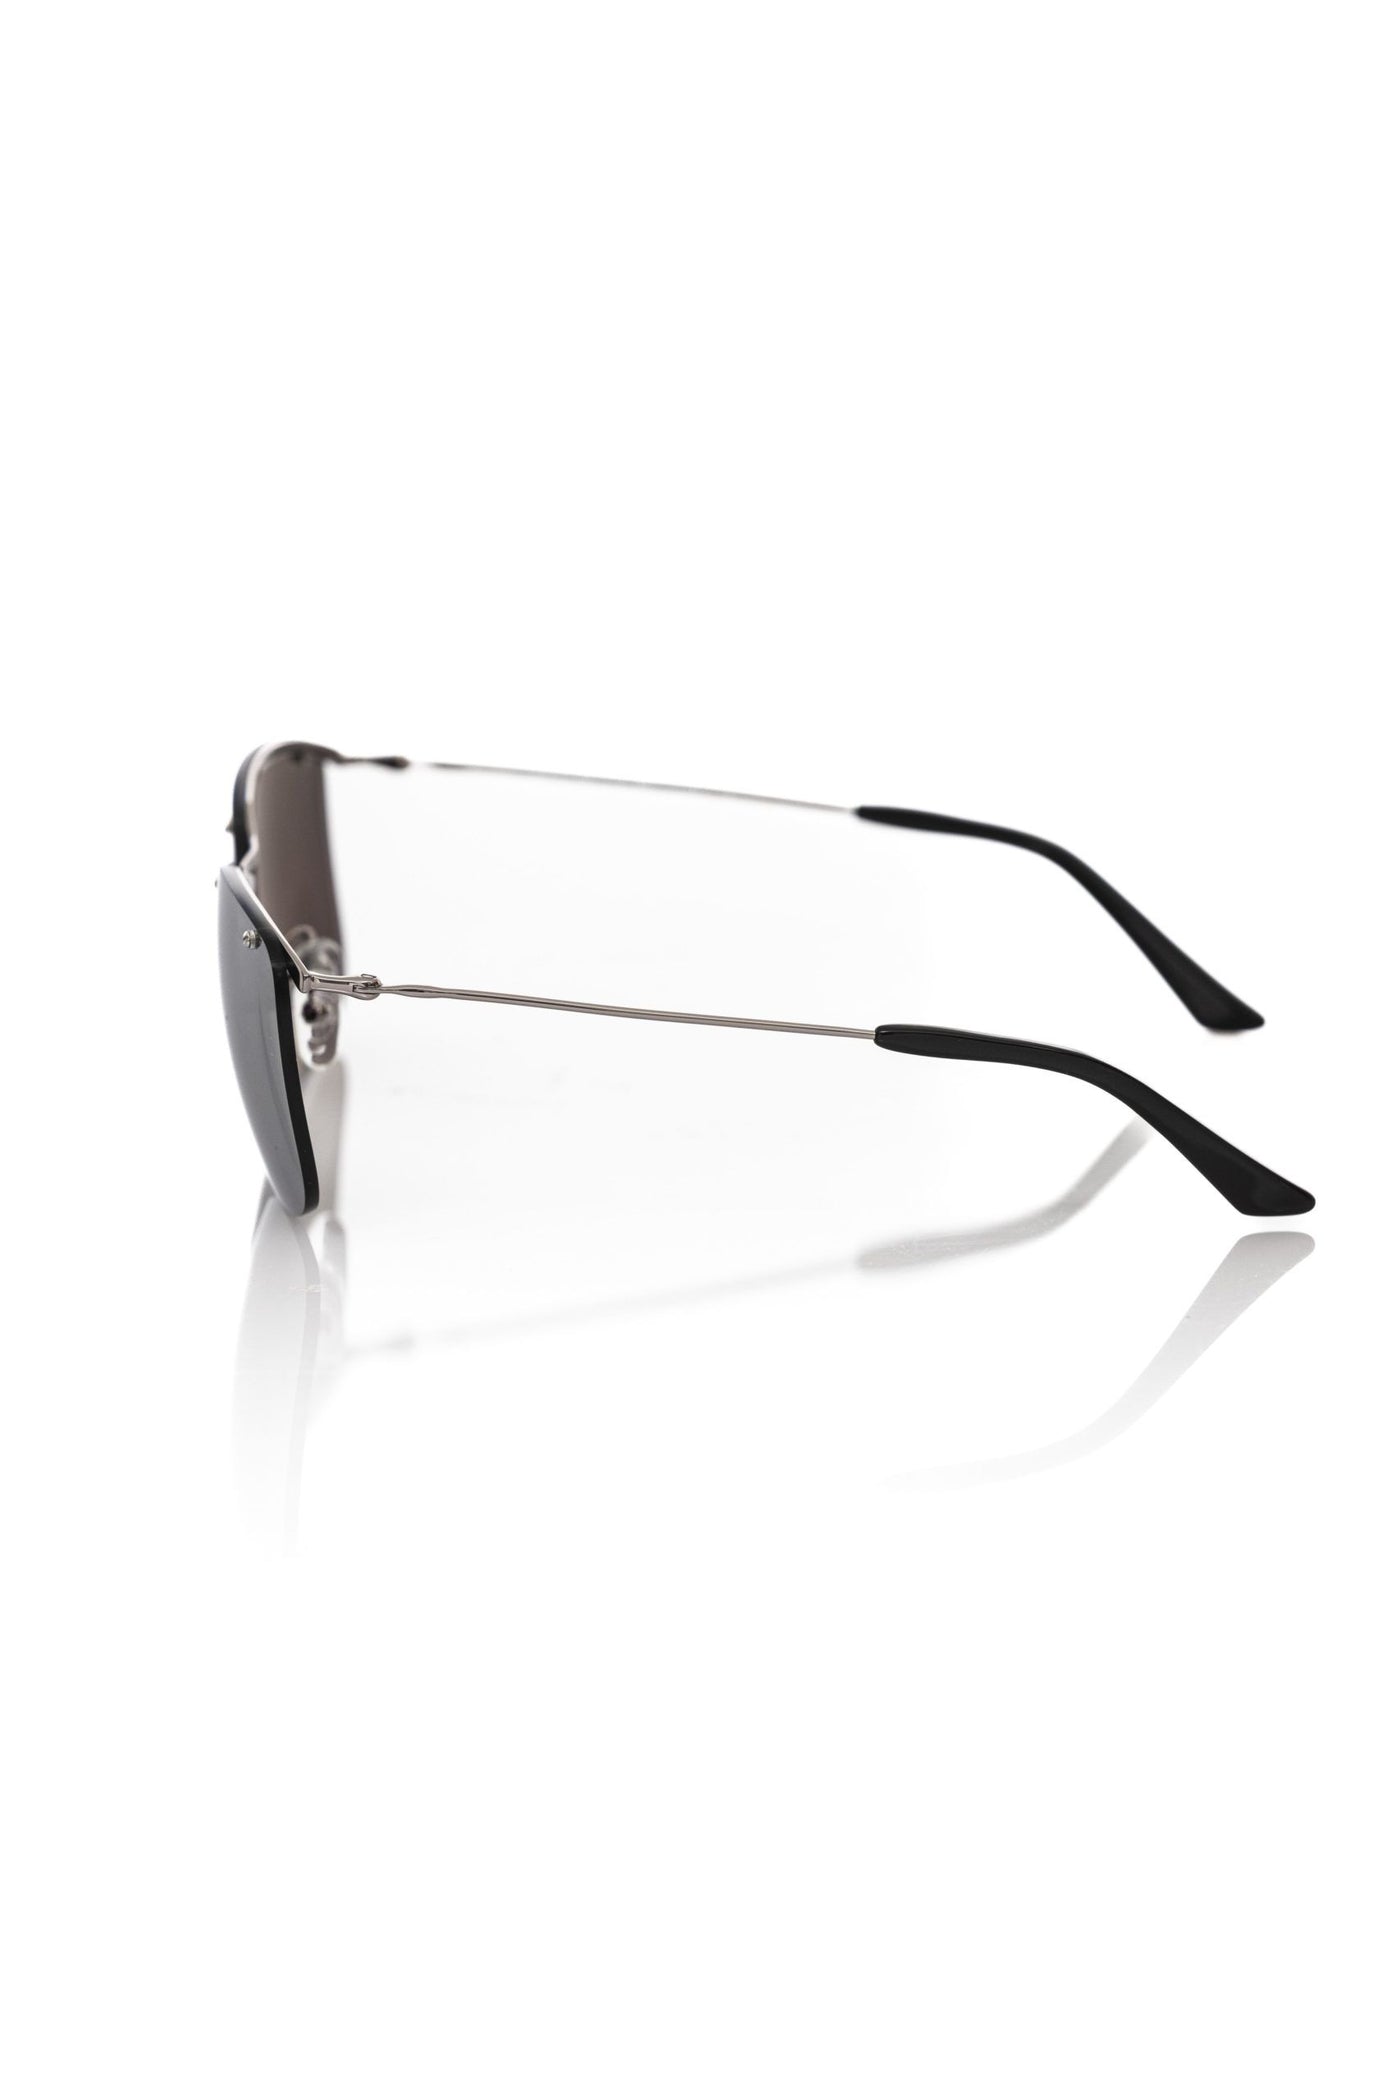 Frankie Morello Silver Metallic Fibre Sunglasses